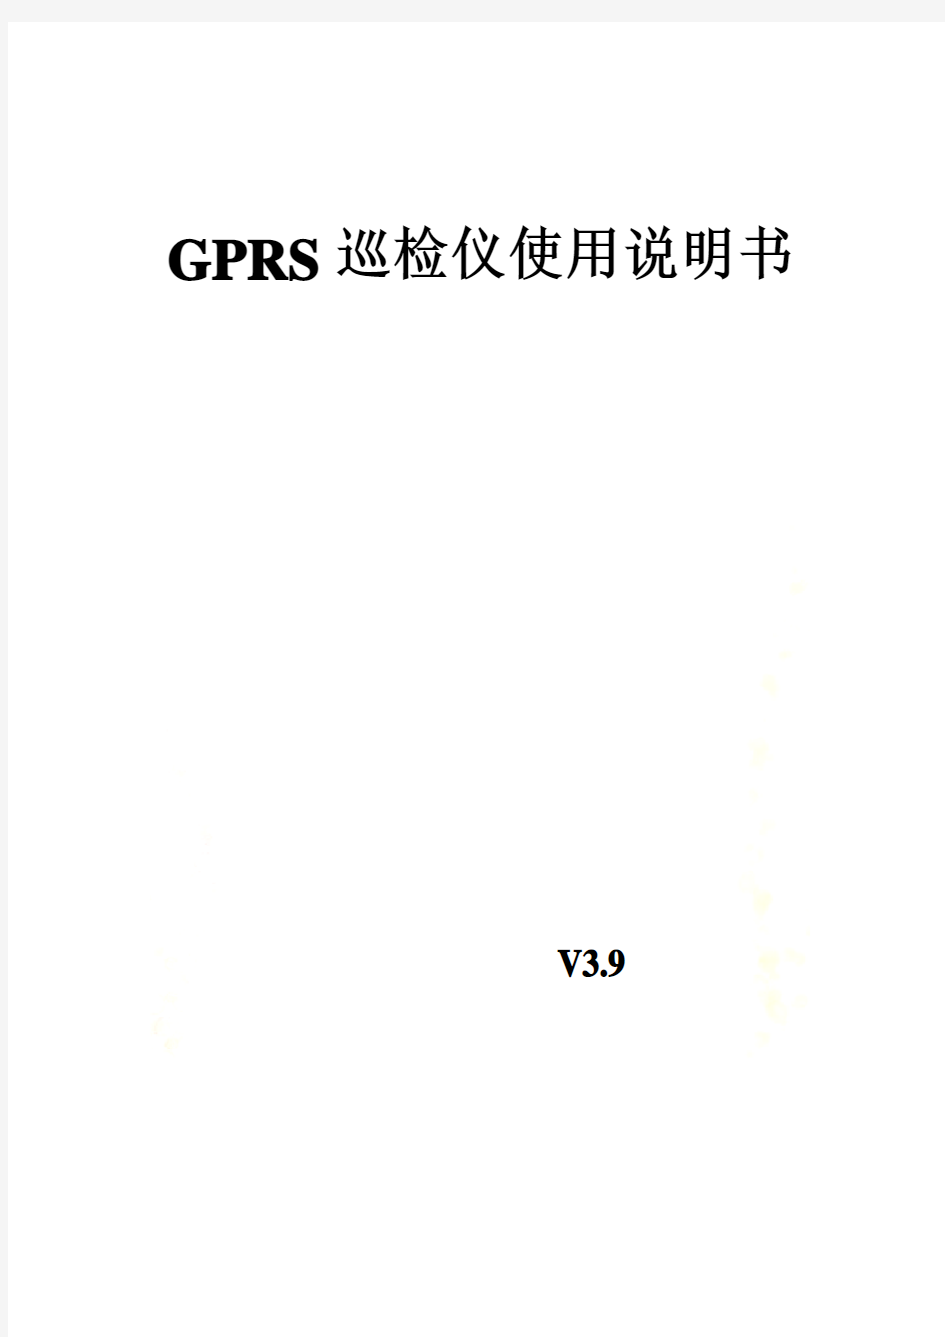 GPRS巡检仪使用说明书